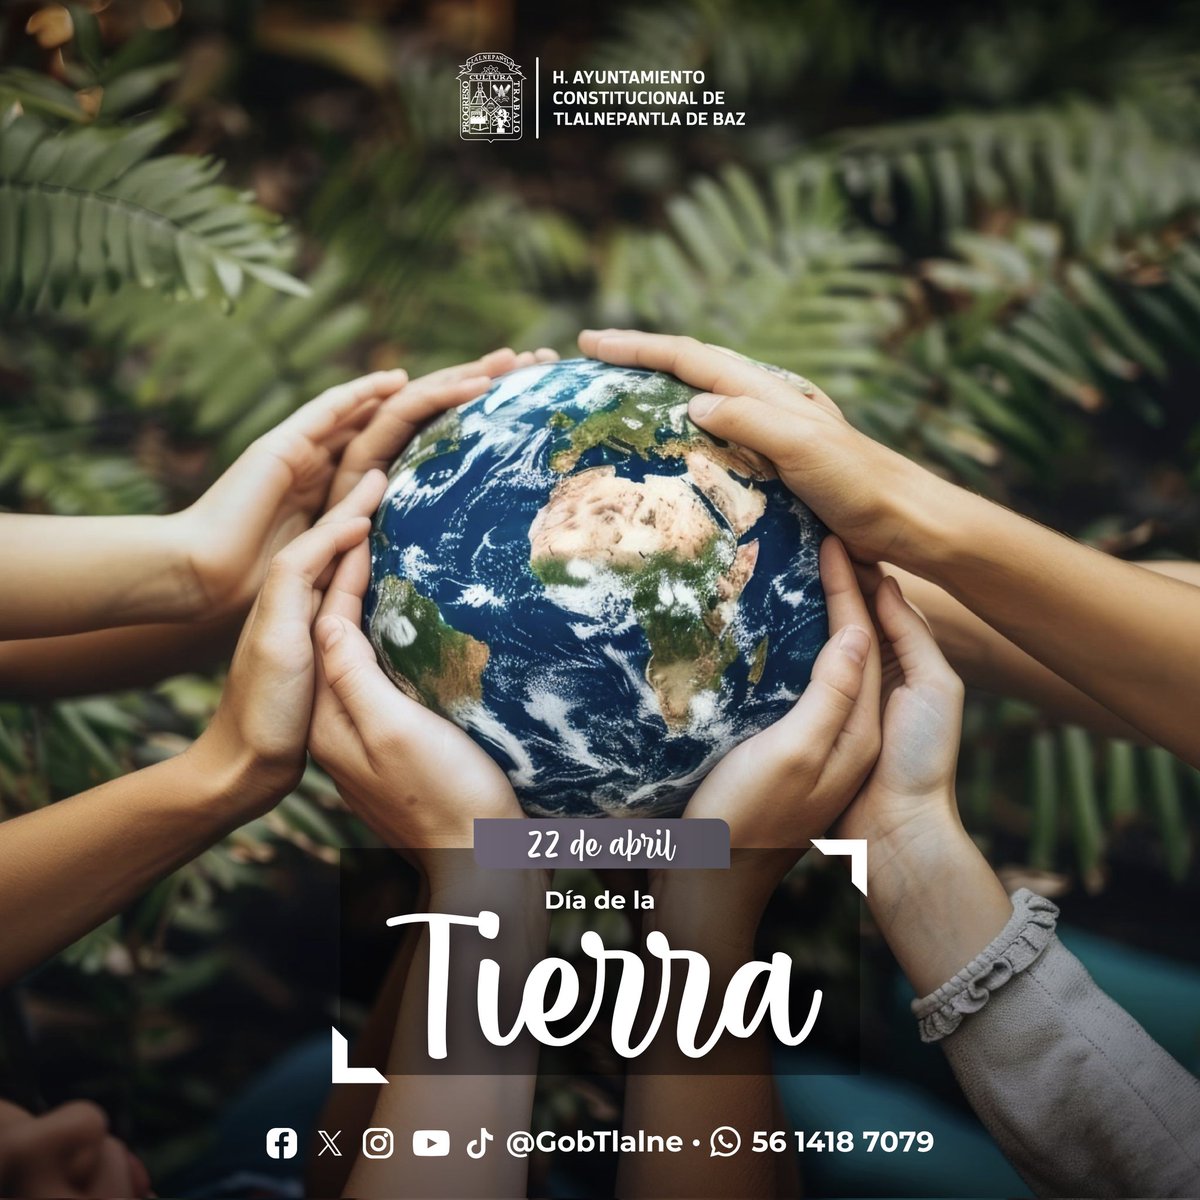 El #DíaDeLaTierra se conmemora con el objetivo de generar conciencia acerca de los problemas de la superpoblación, la contaminación y la importancia de la conservación de la biodiversidad. #Tlalnepantla